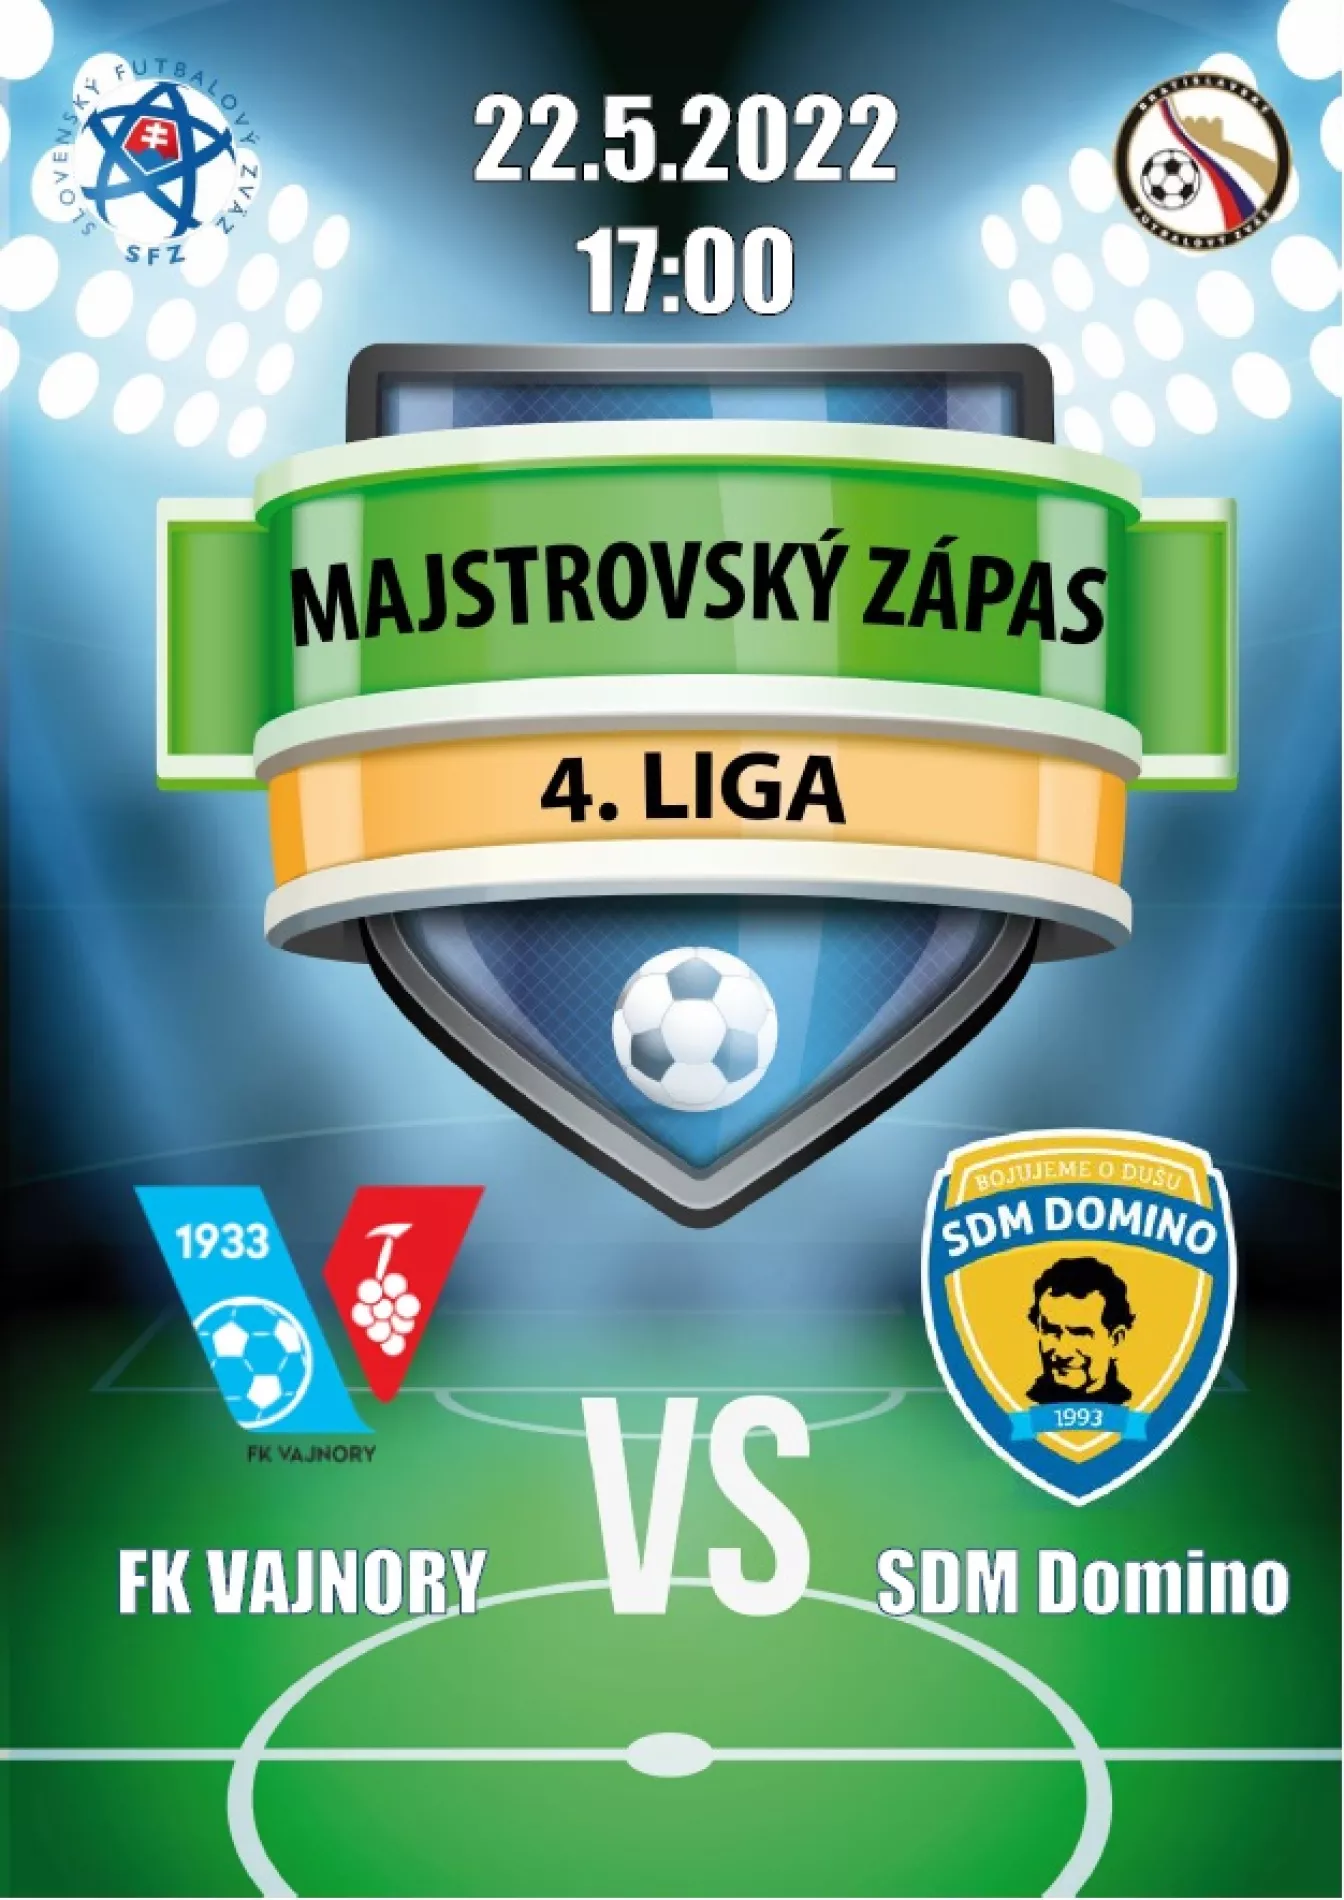 FK Vajnory - SDM Domino